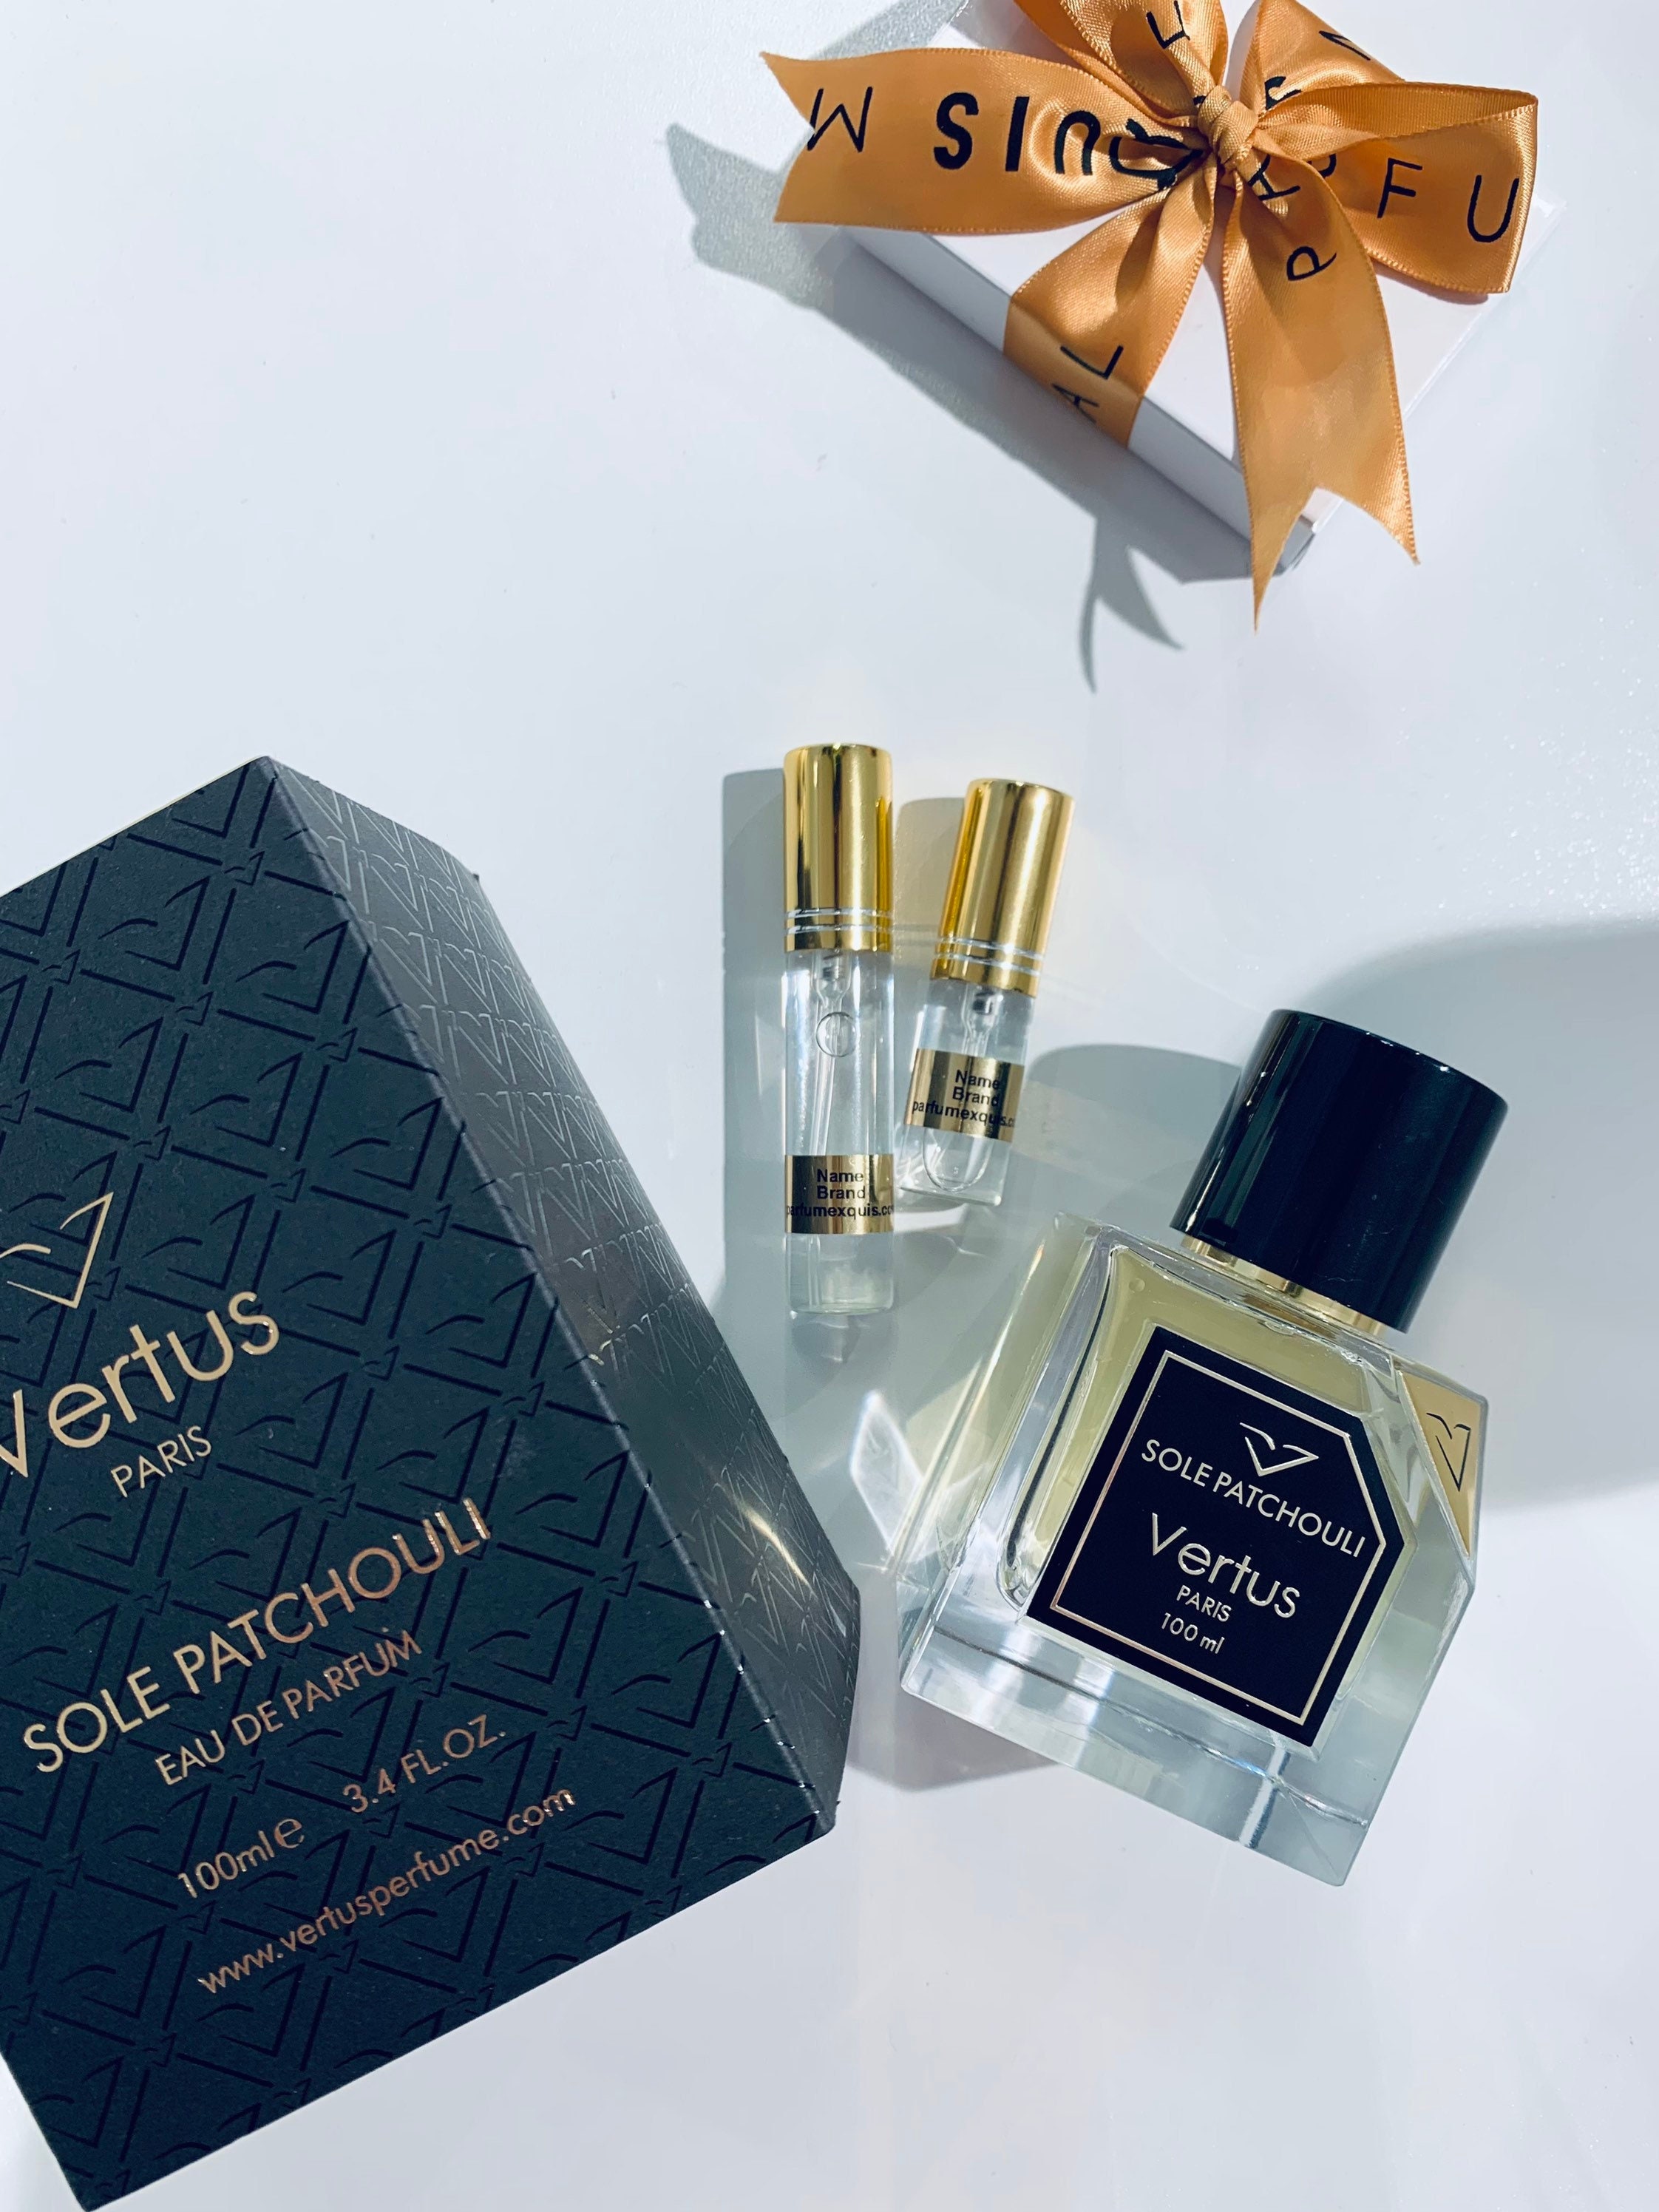 Sole Patchouli Vertus Paris Eau De Parfum Spray Long-lasting Perfume for  Women and Men Sample Size Travel Decant 5ml 10ml 